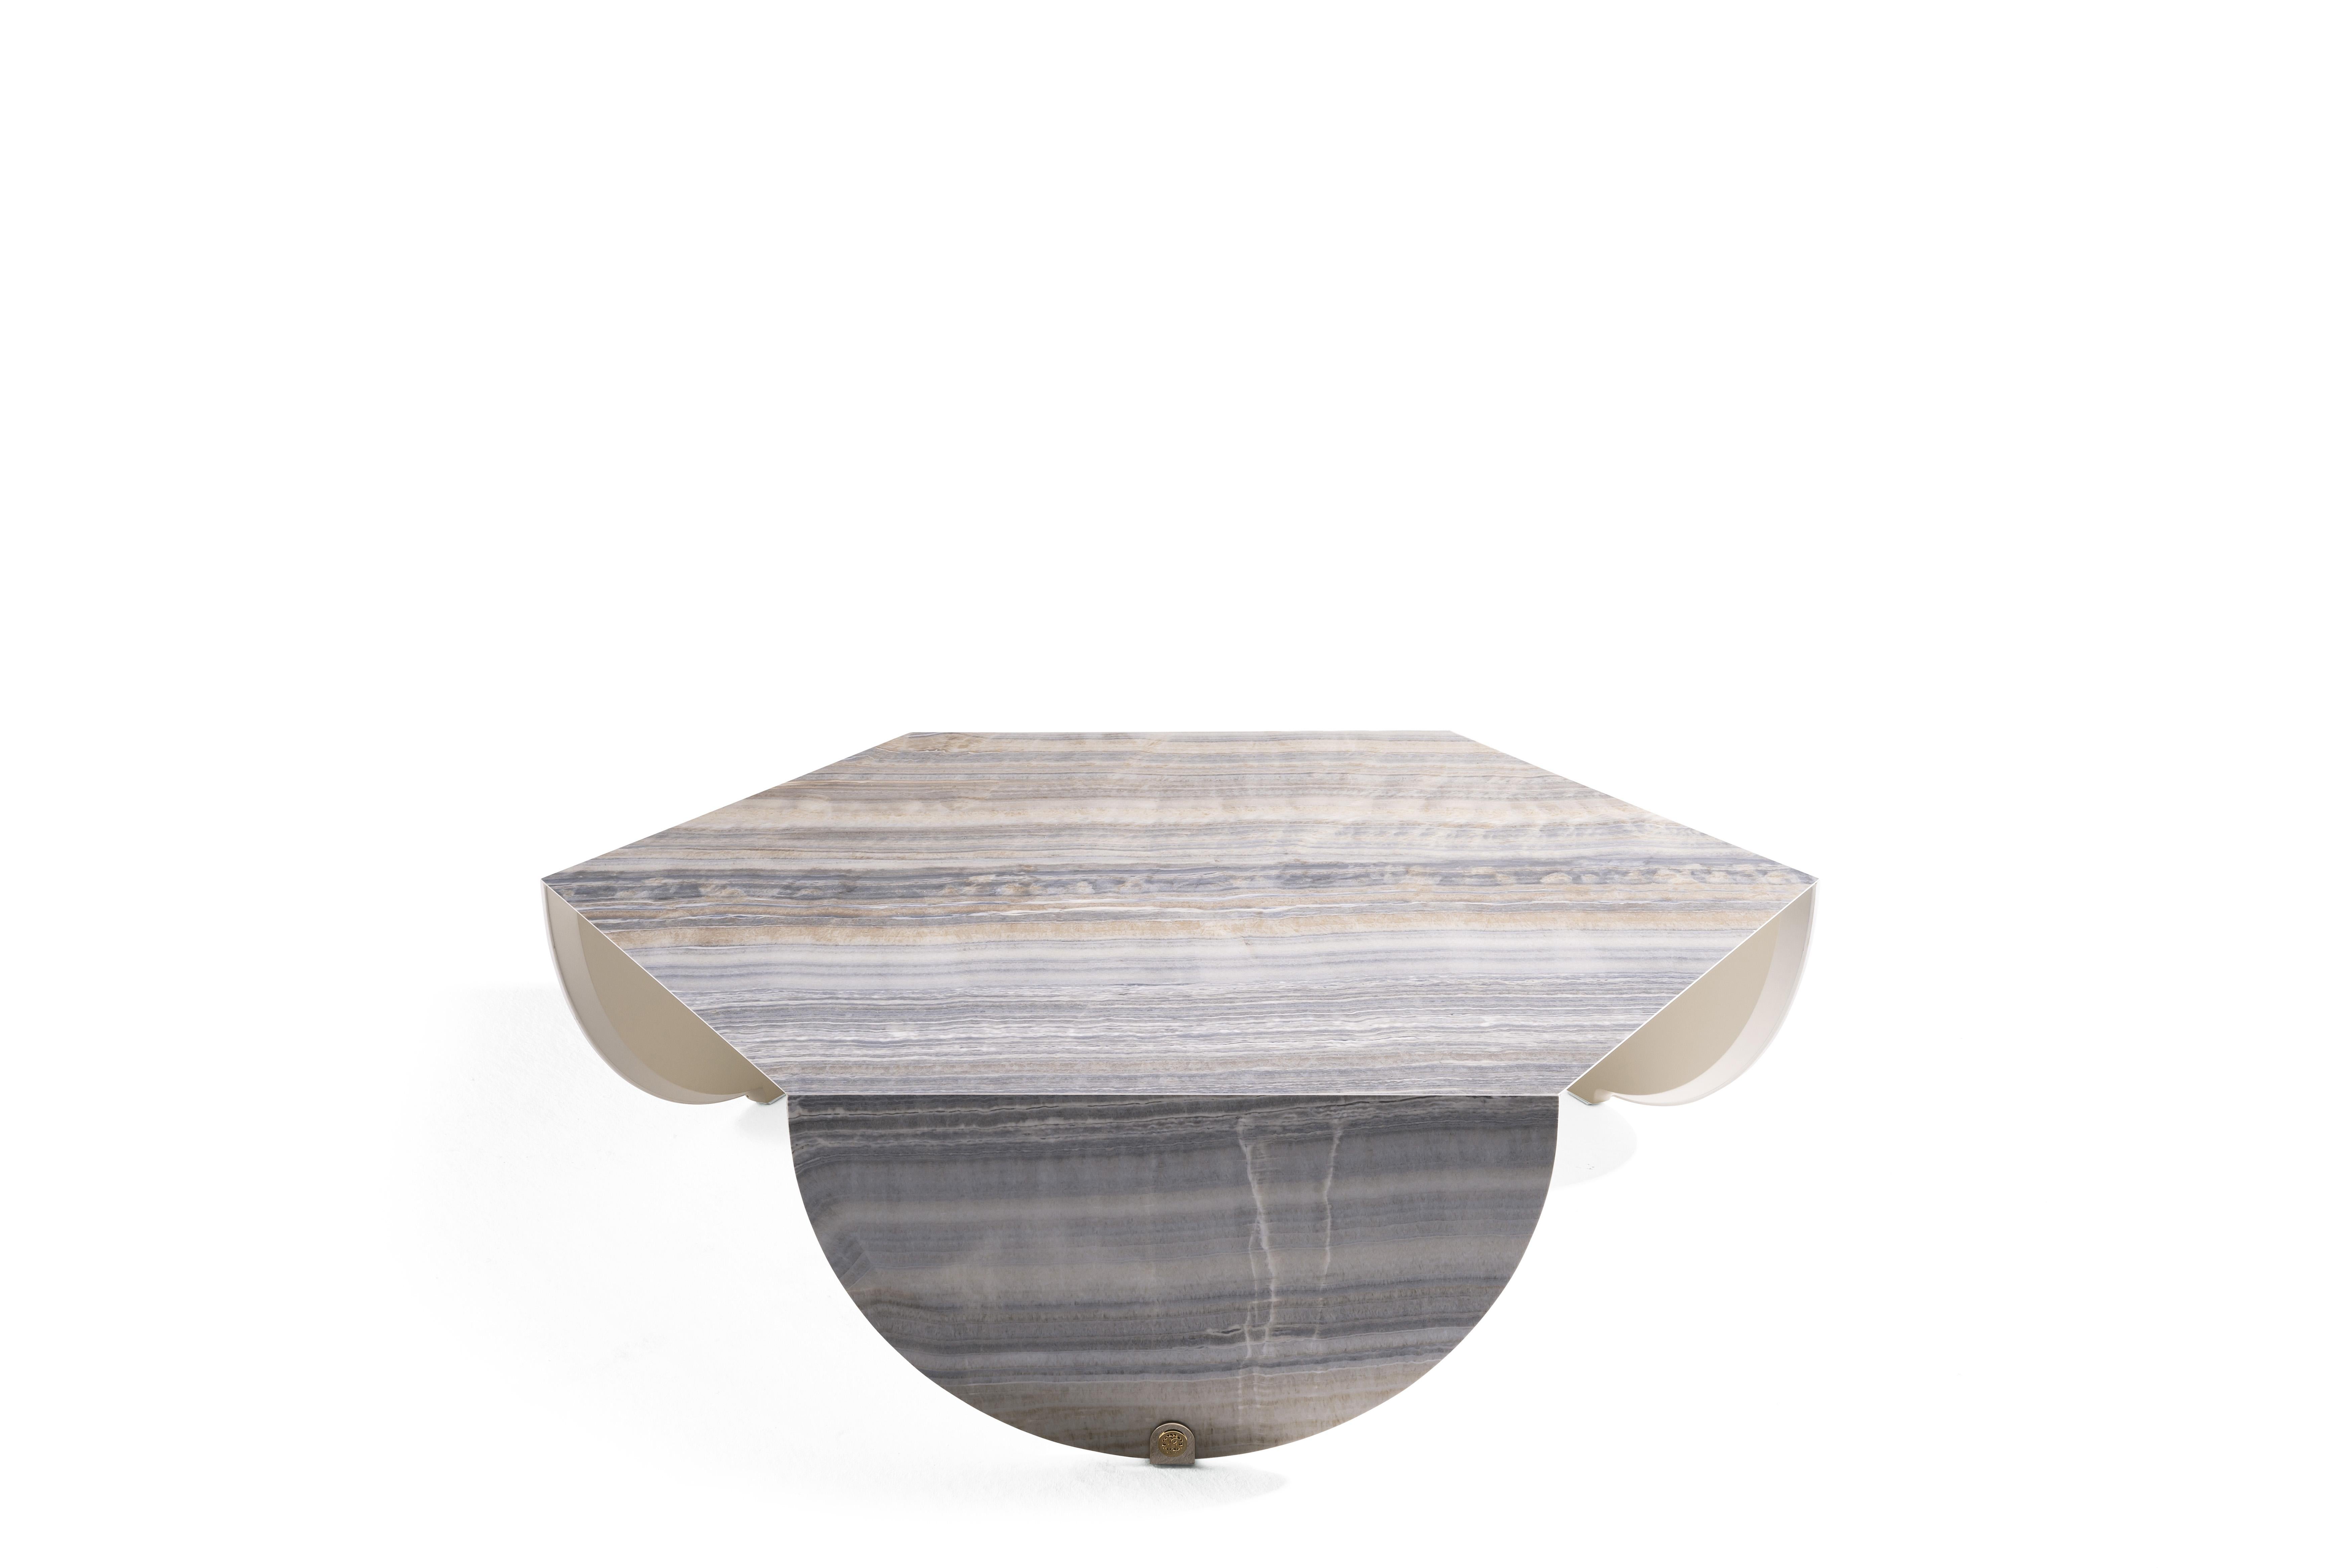 Der Inagua-Tisch, der in einem komplexen handwerklichen Verfahren aus Feinsteinzeug hergestellt wird, zeichnet sich durch die sechseckige Form der Platte aus, die im Kontrast zu den geschwungenen Linien der Beine steht und dem Ganzen eine besondere